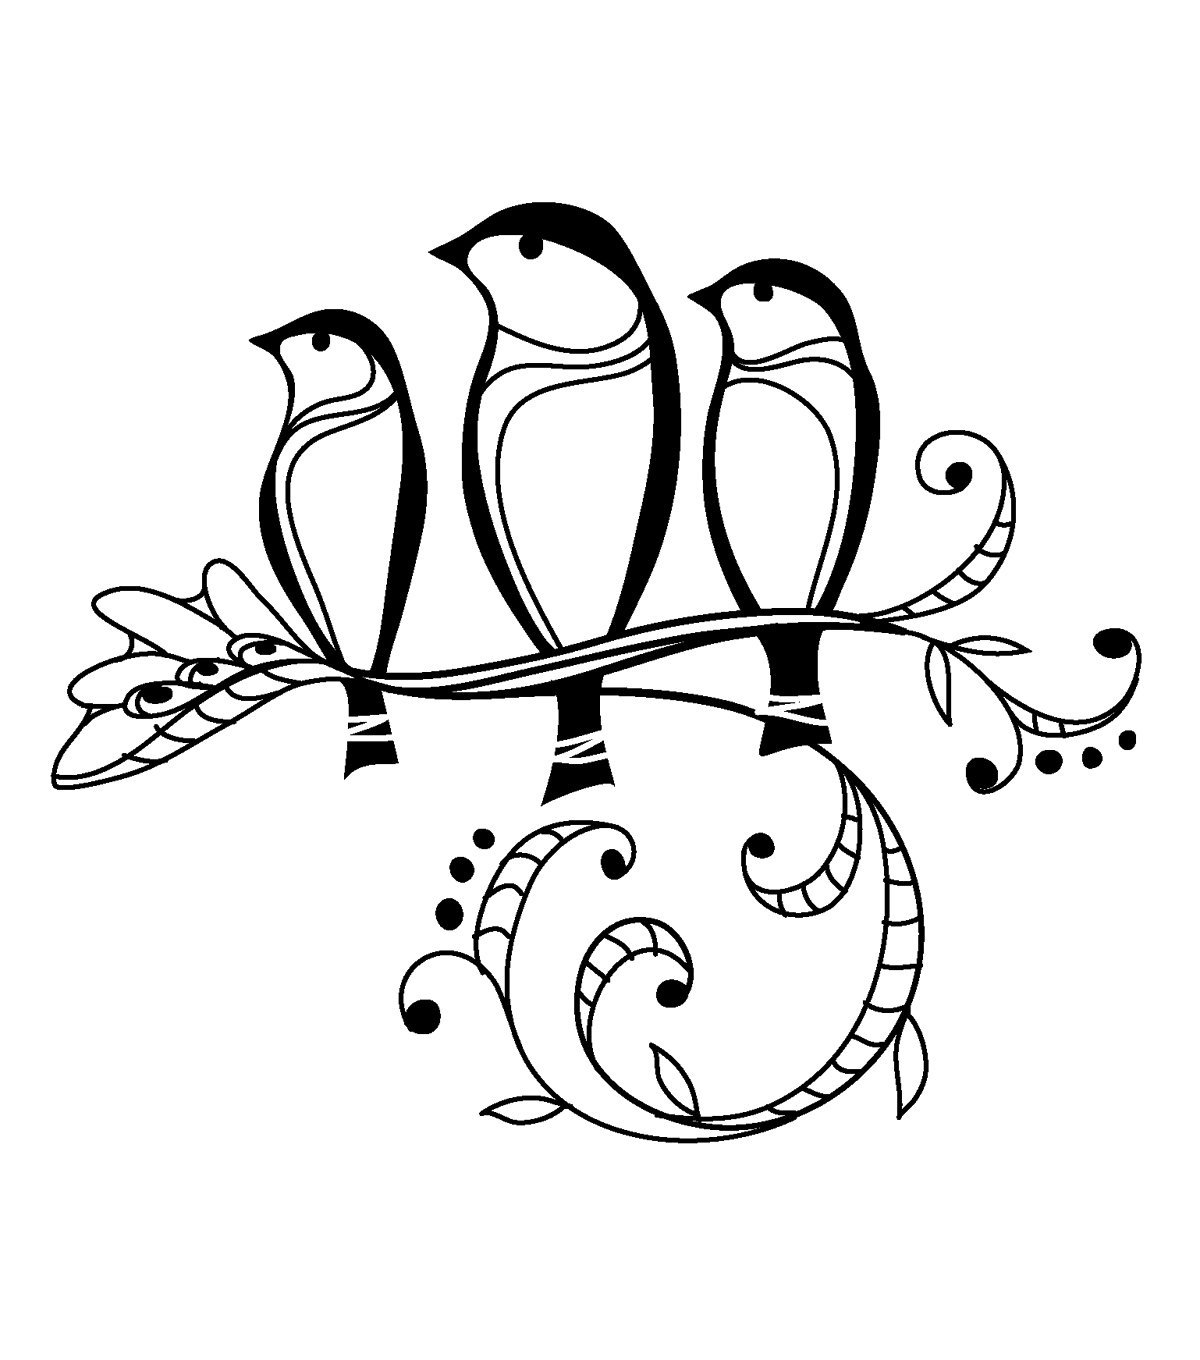 12 birds. Вензель птичка. Узоры с птичками. Птица эскиз. Схематичное изображение птицы.